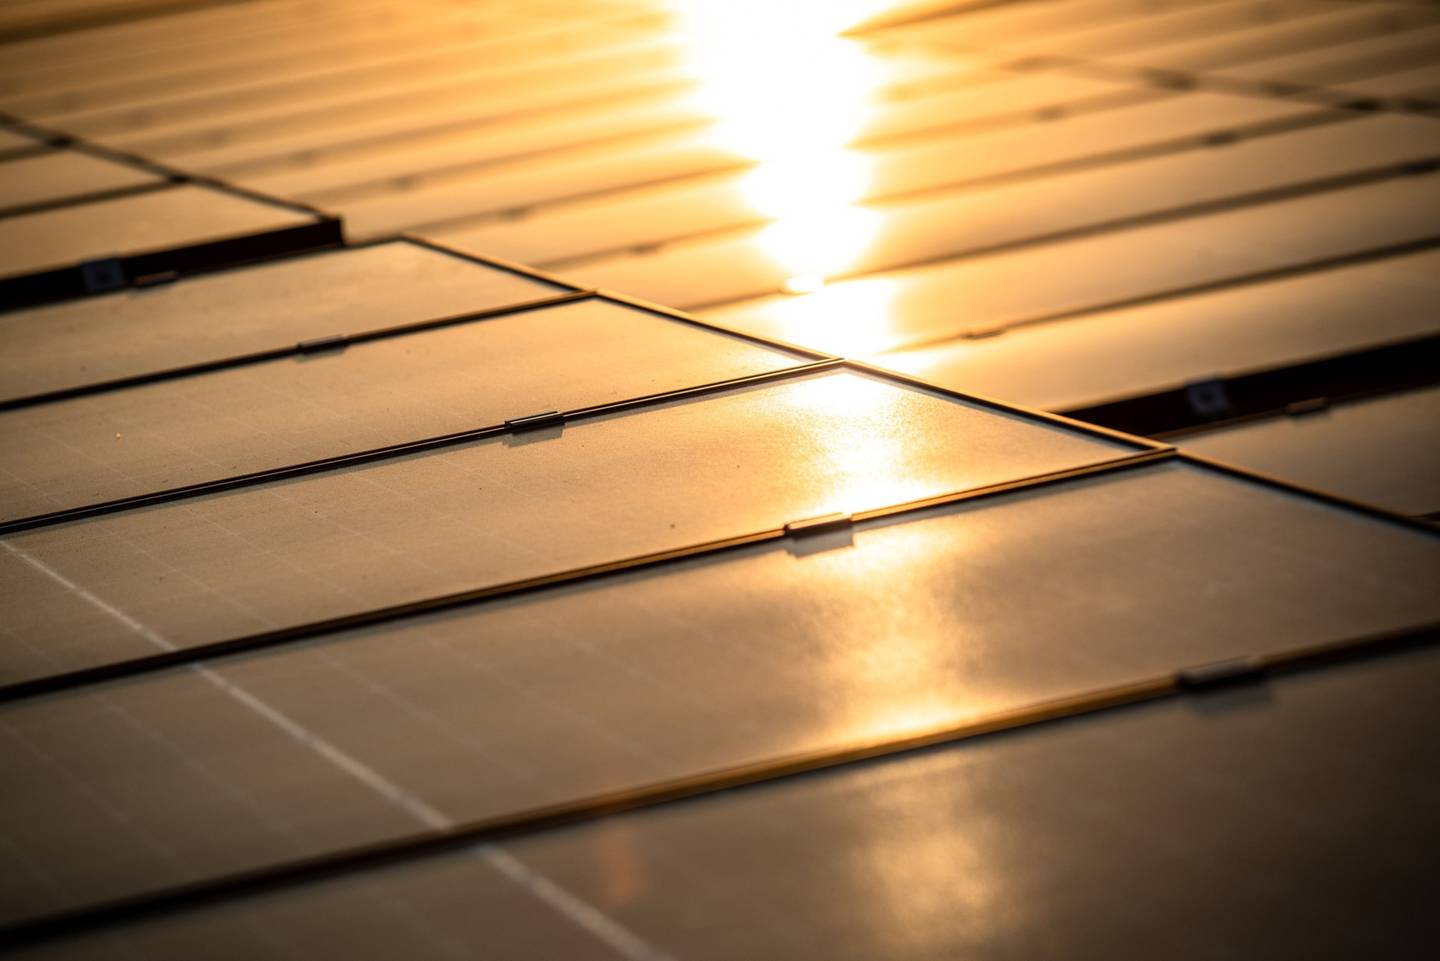 España instaló 5.048 megavatios de proyectos solares fotovoltaicos en 2019. Fotógrafo: Ángel García/Bloomberg